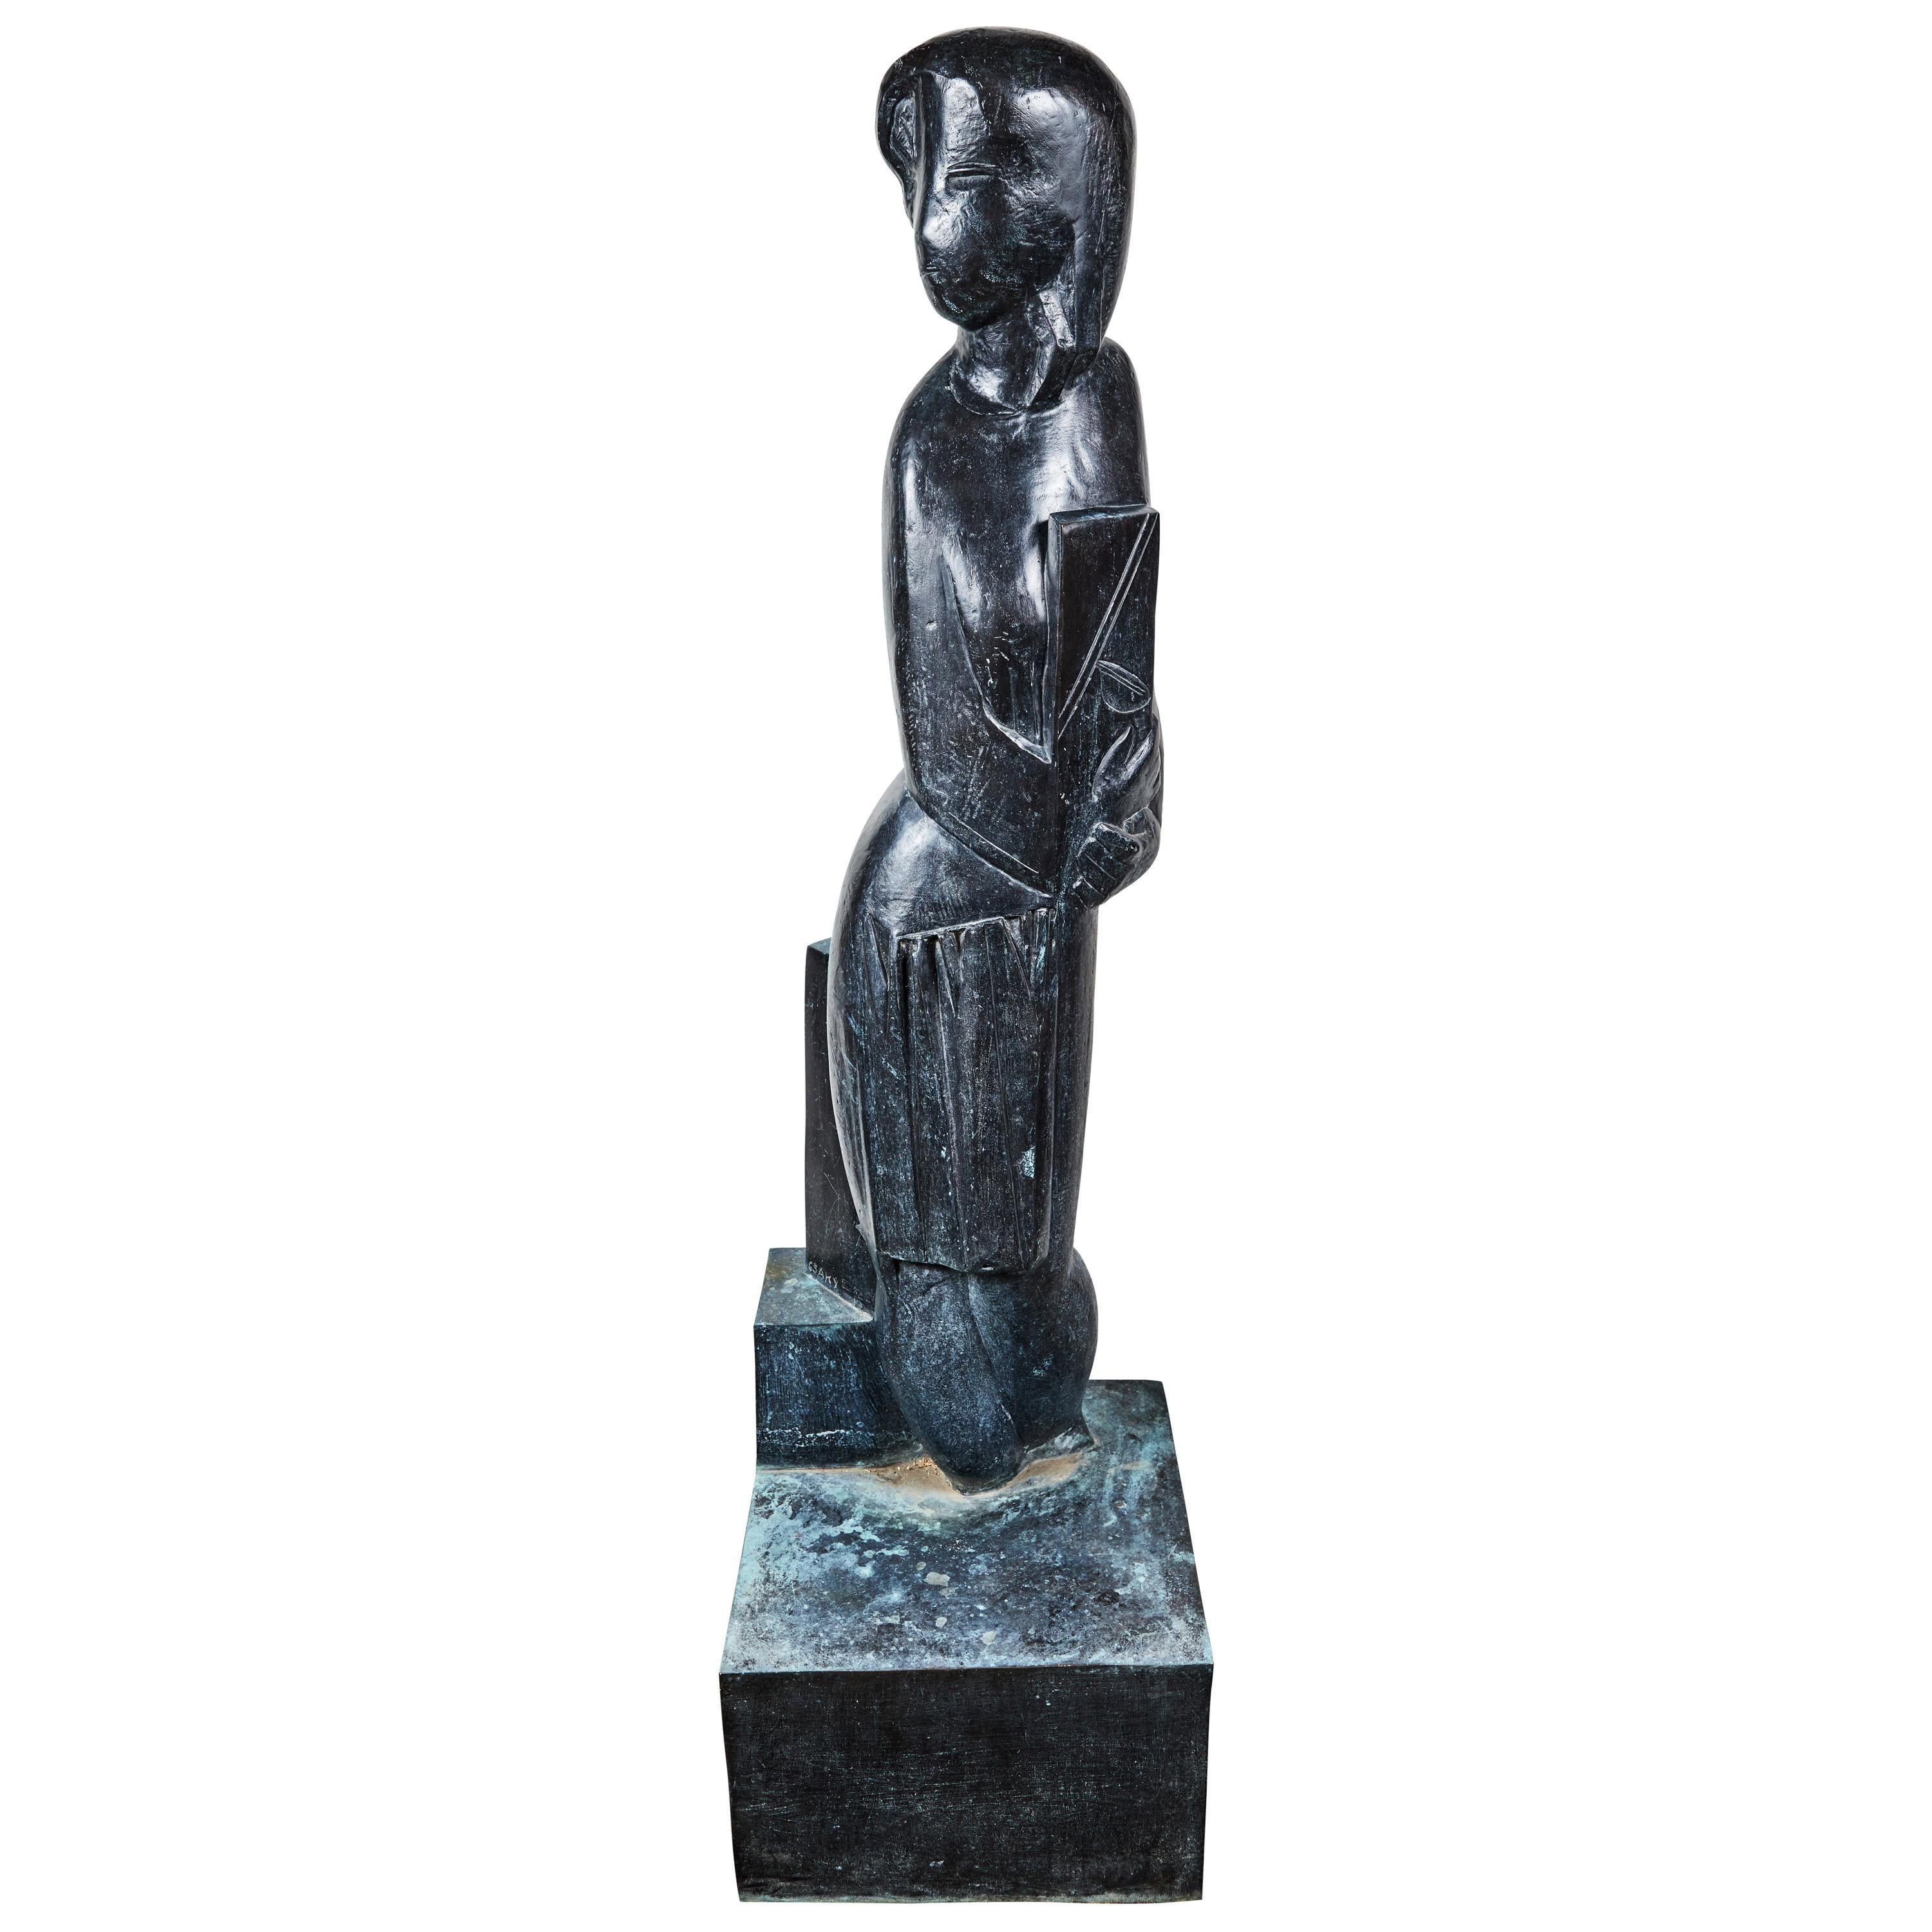 Joseph Csaky Figurative Sculpture – Signiert, lebensgroß, abstrakt figurativ, Bronzeskulptur